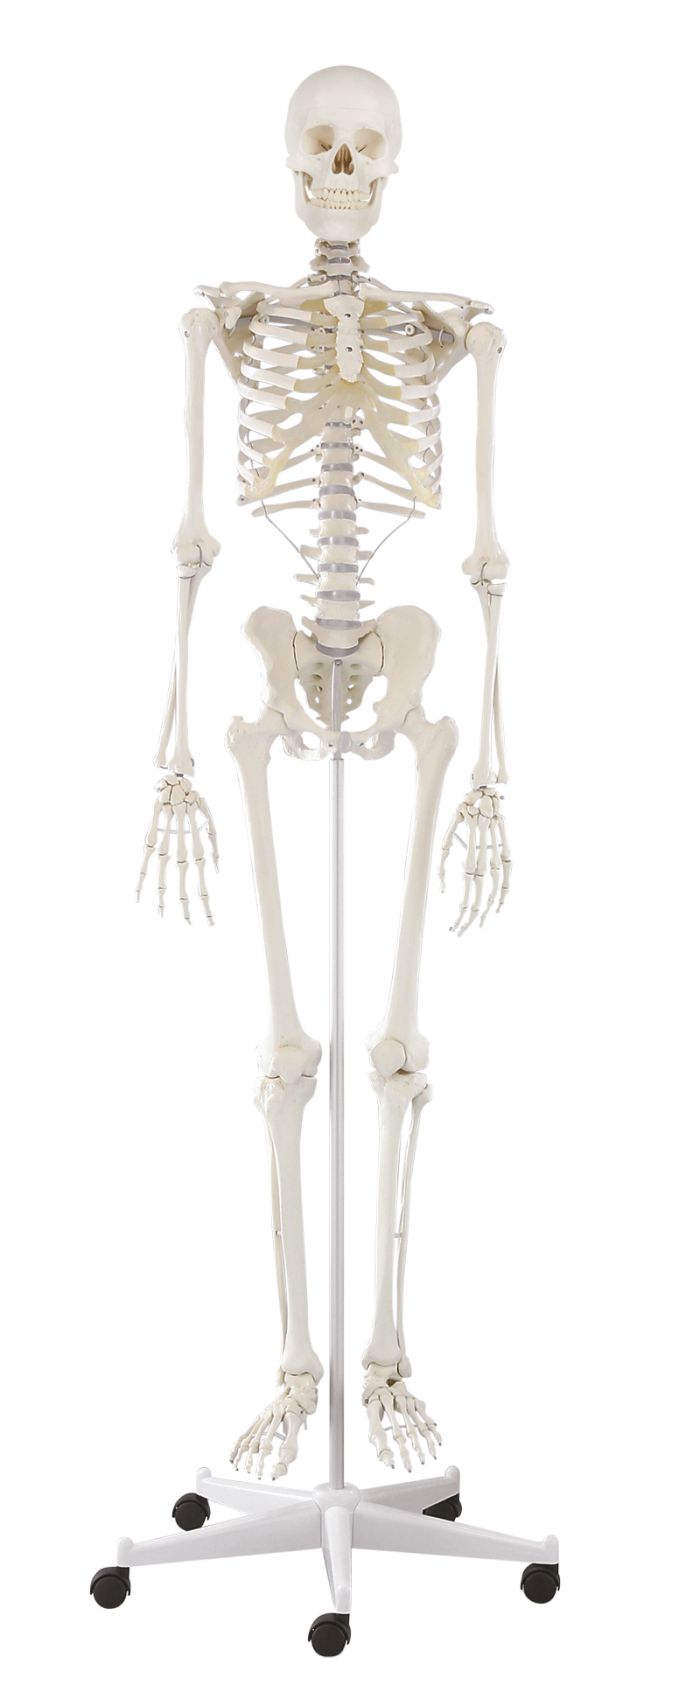 Skelett Willi, Bestellnummer 3001